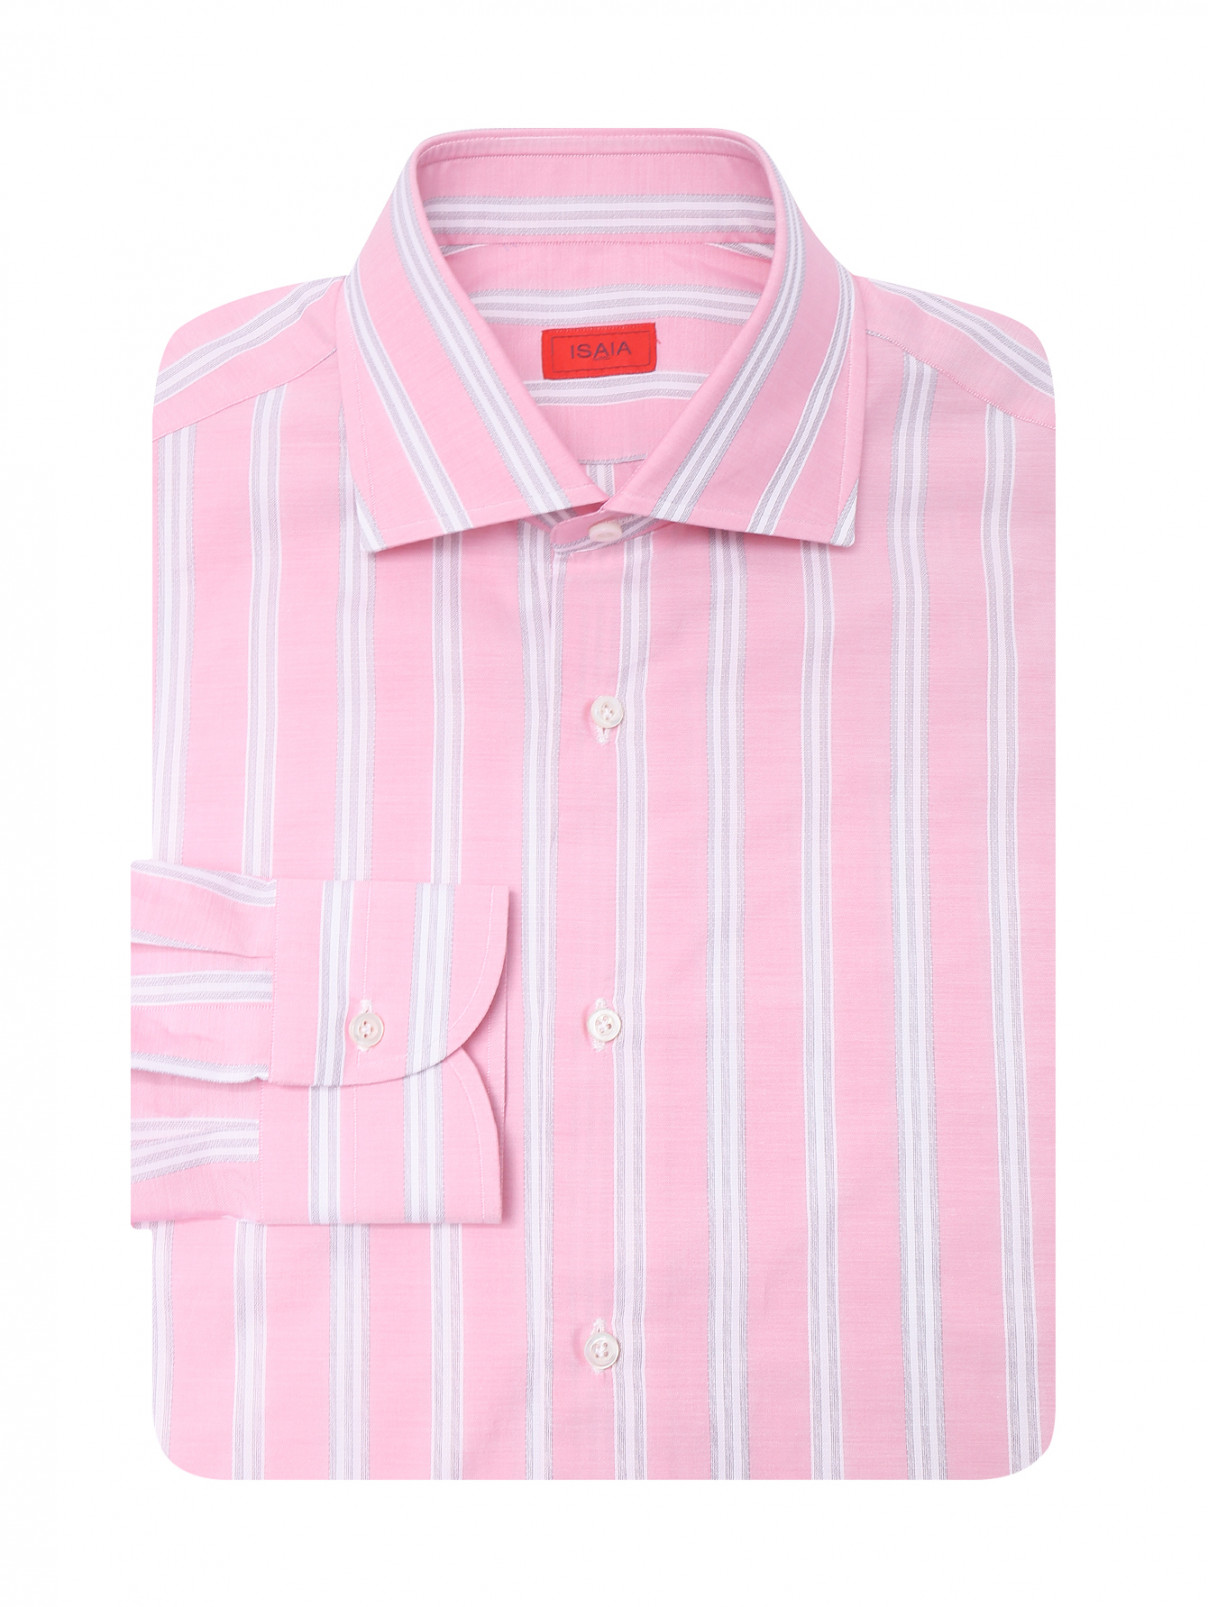 Рубашка из хлопка с узором полоска Isaia  –  Общий вид  – Цвет:  Розовый